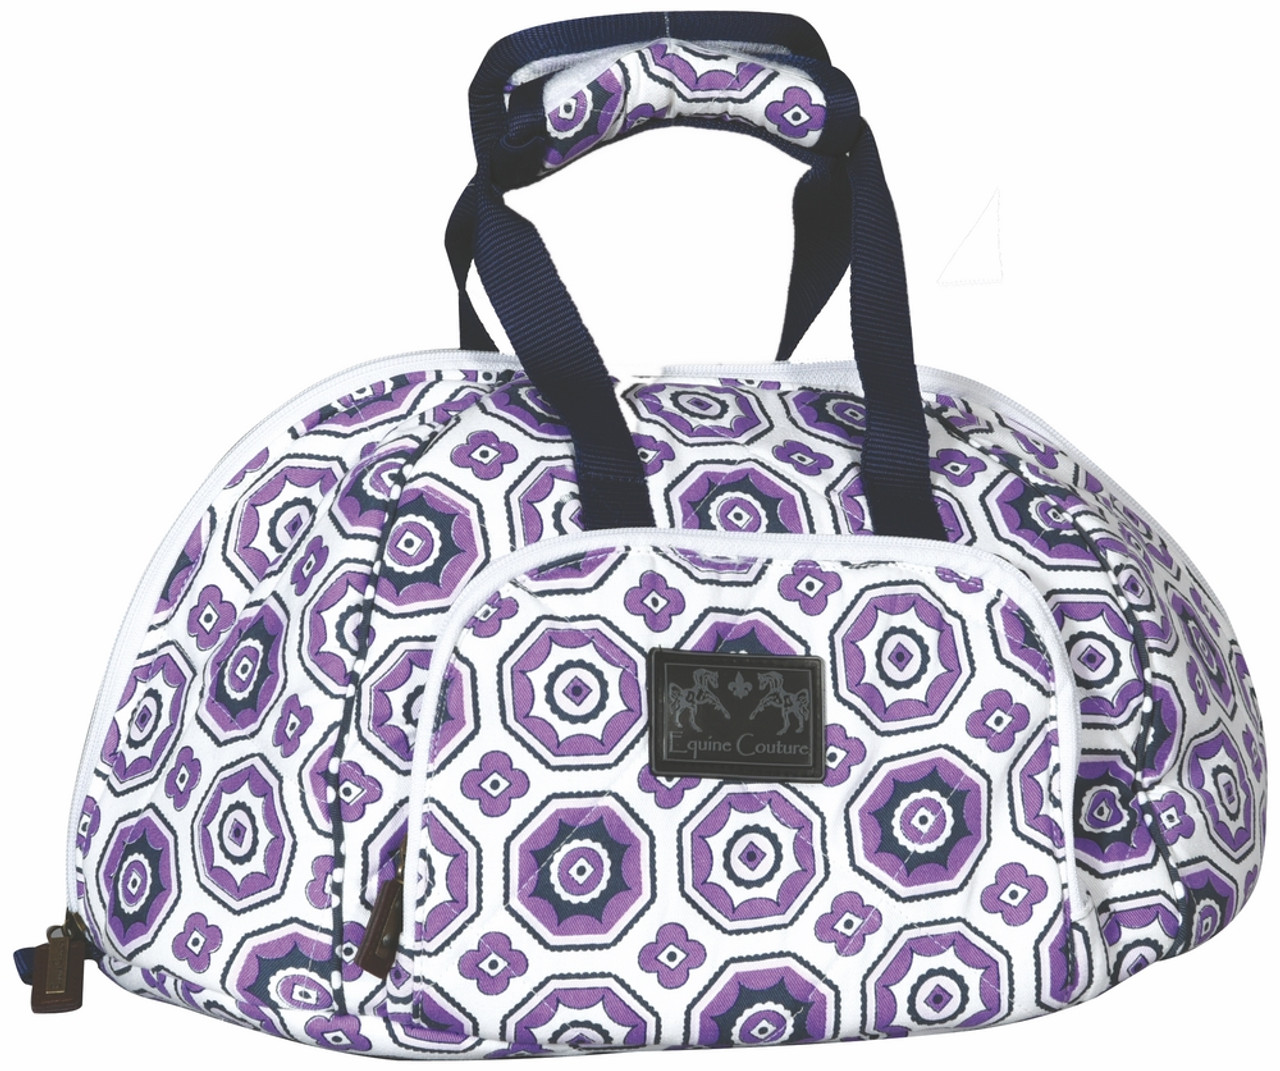 Equine Couture Kelsey Helmet Bag - purple